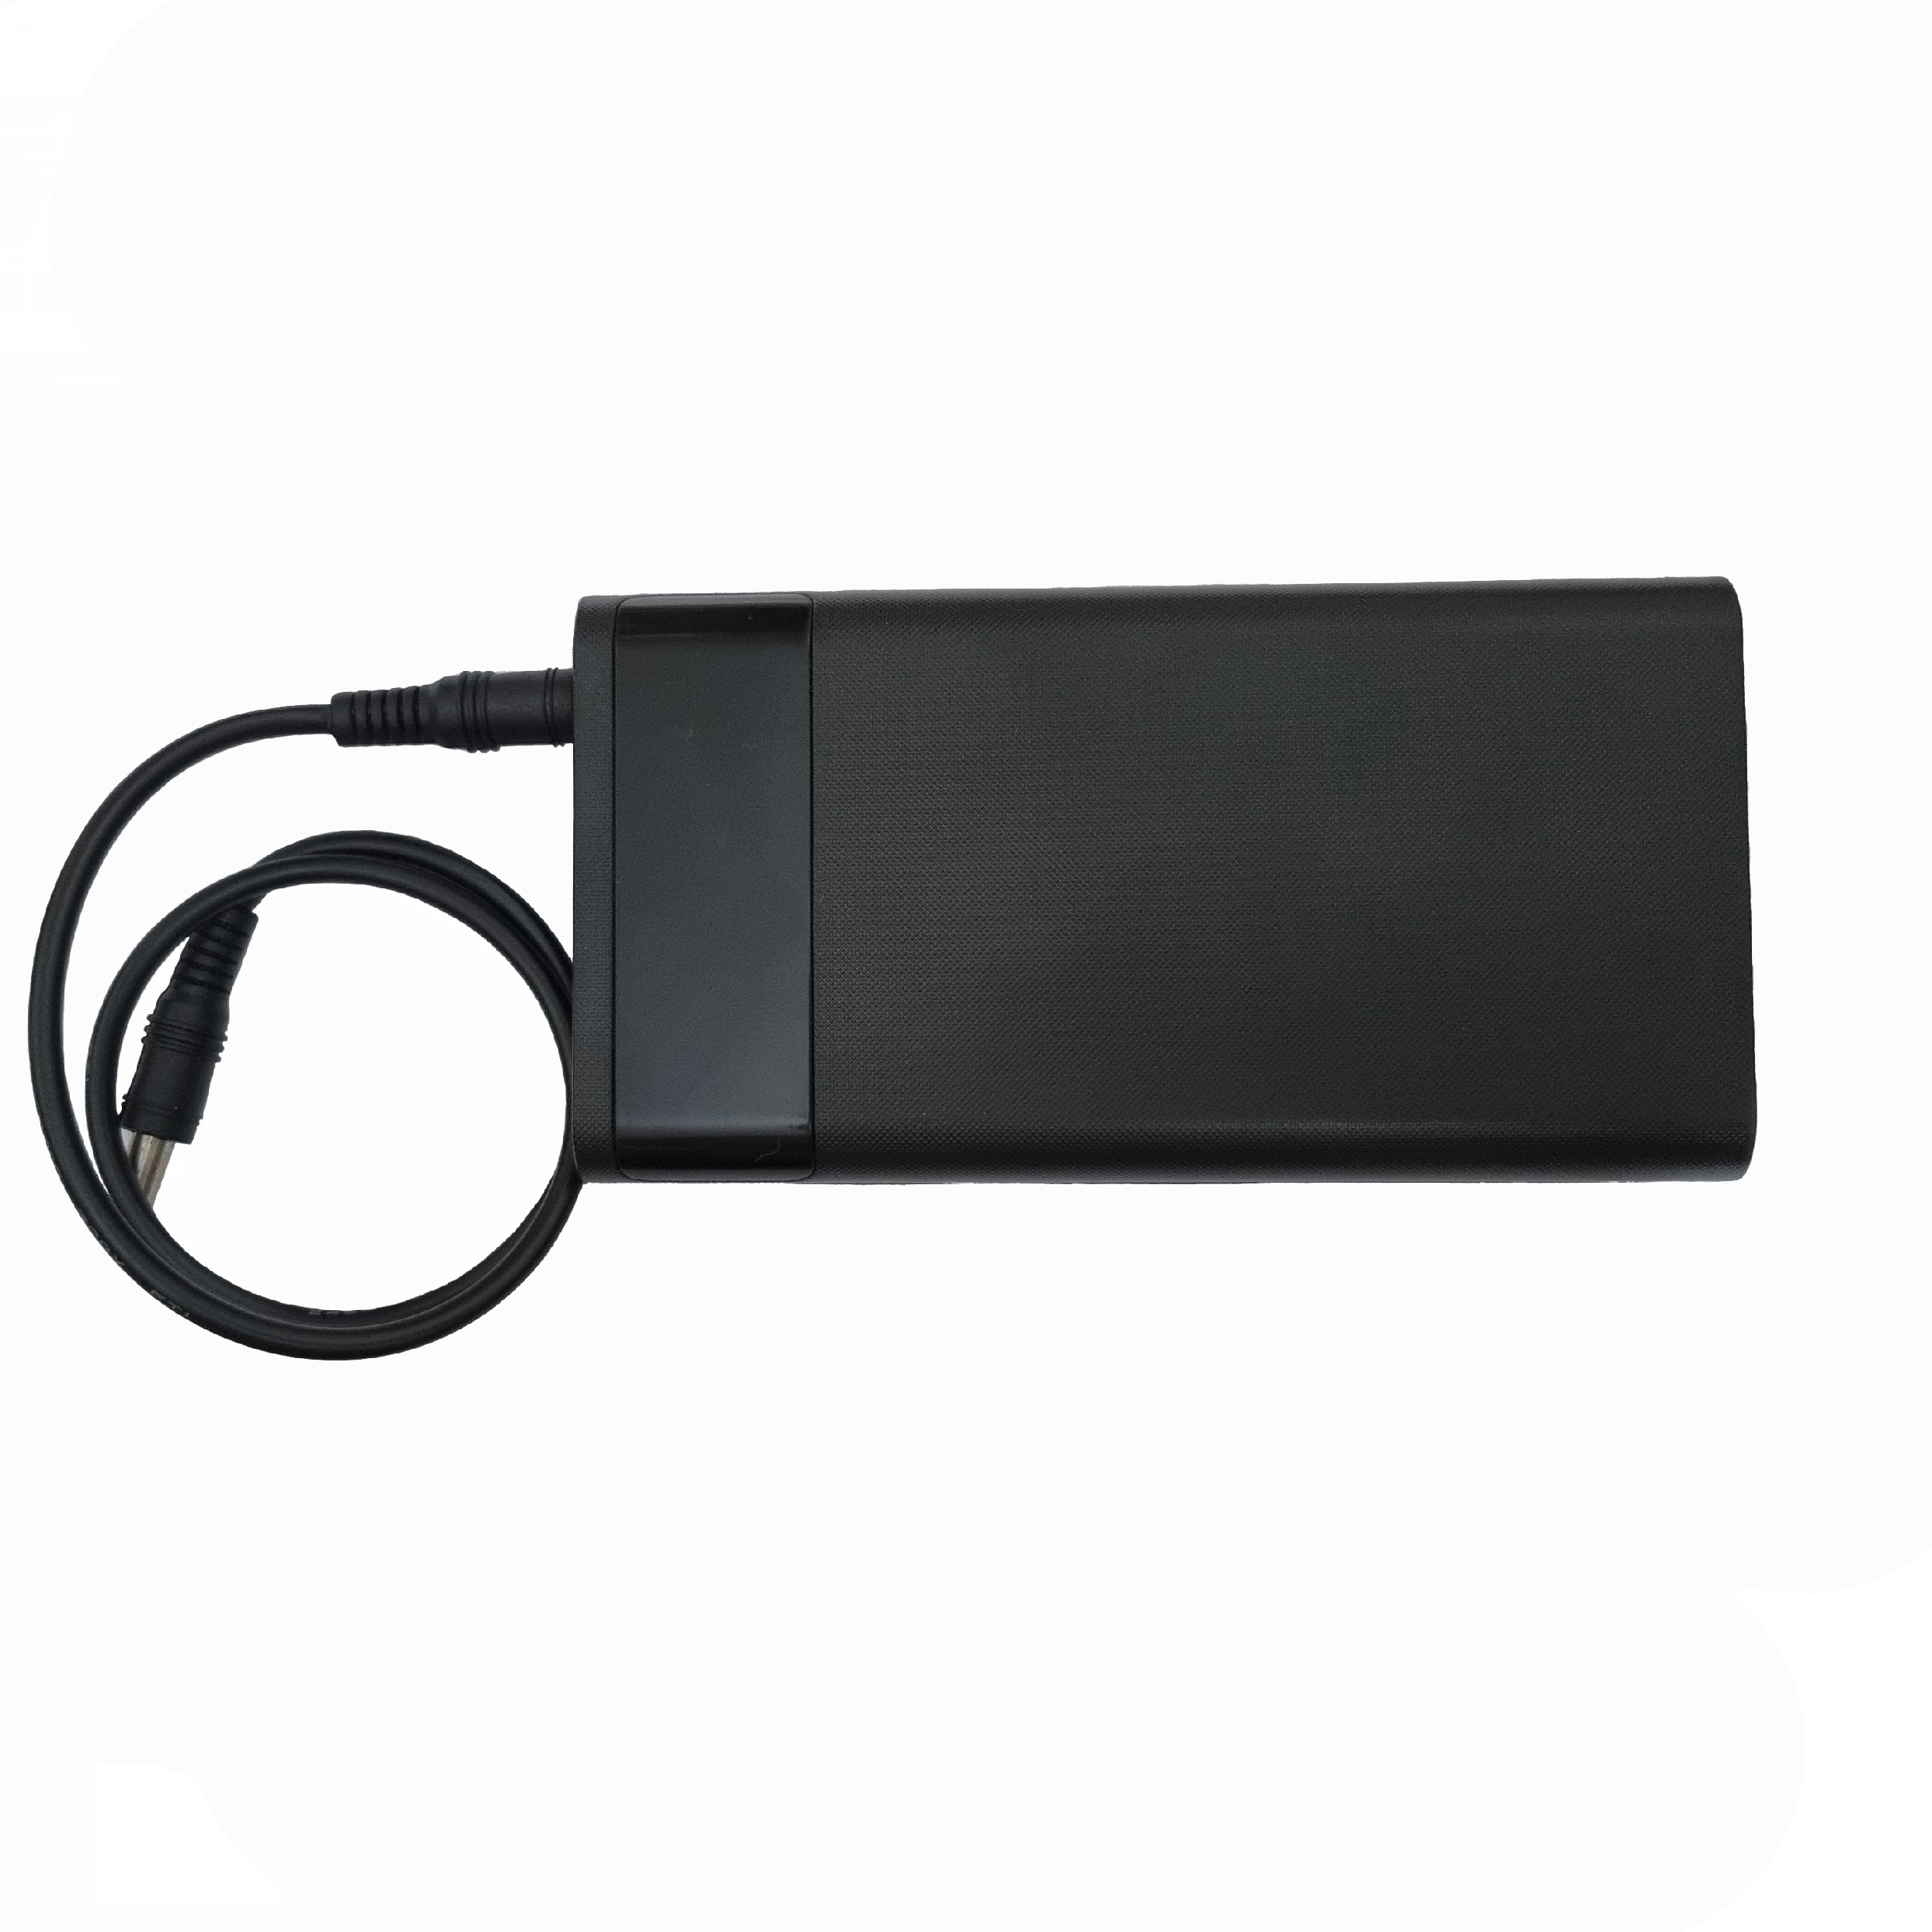 شارژر لپ تاپ 20 ولت 3.4 آمپر مدل portable مناسب برای لپ اپ ایسوس 65w 4280692